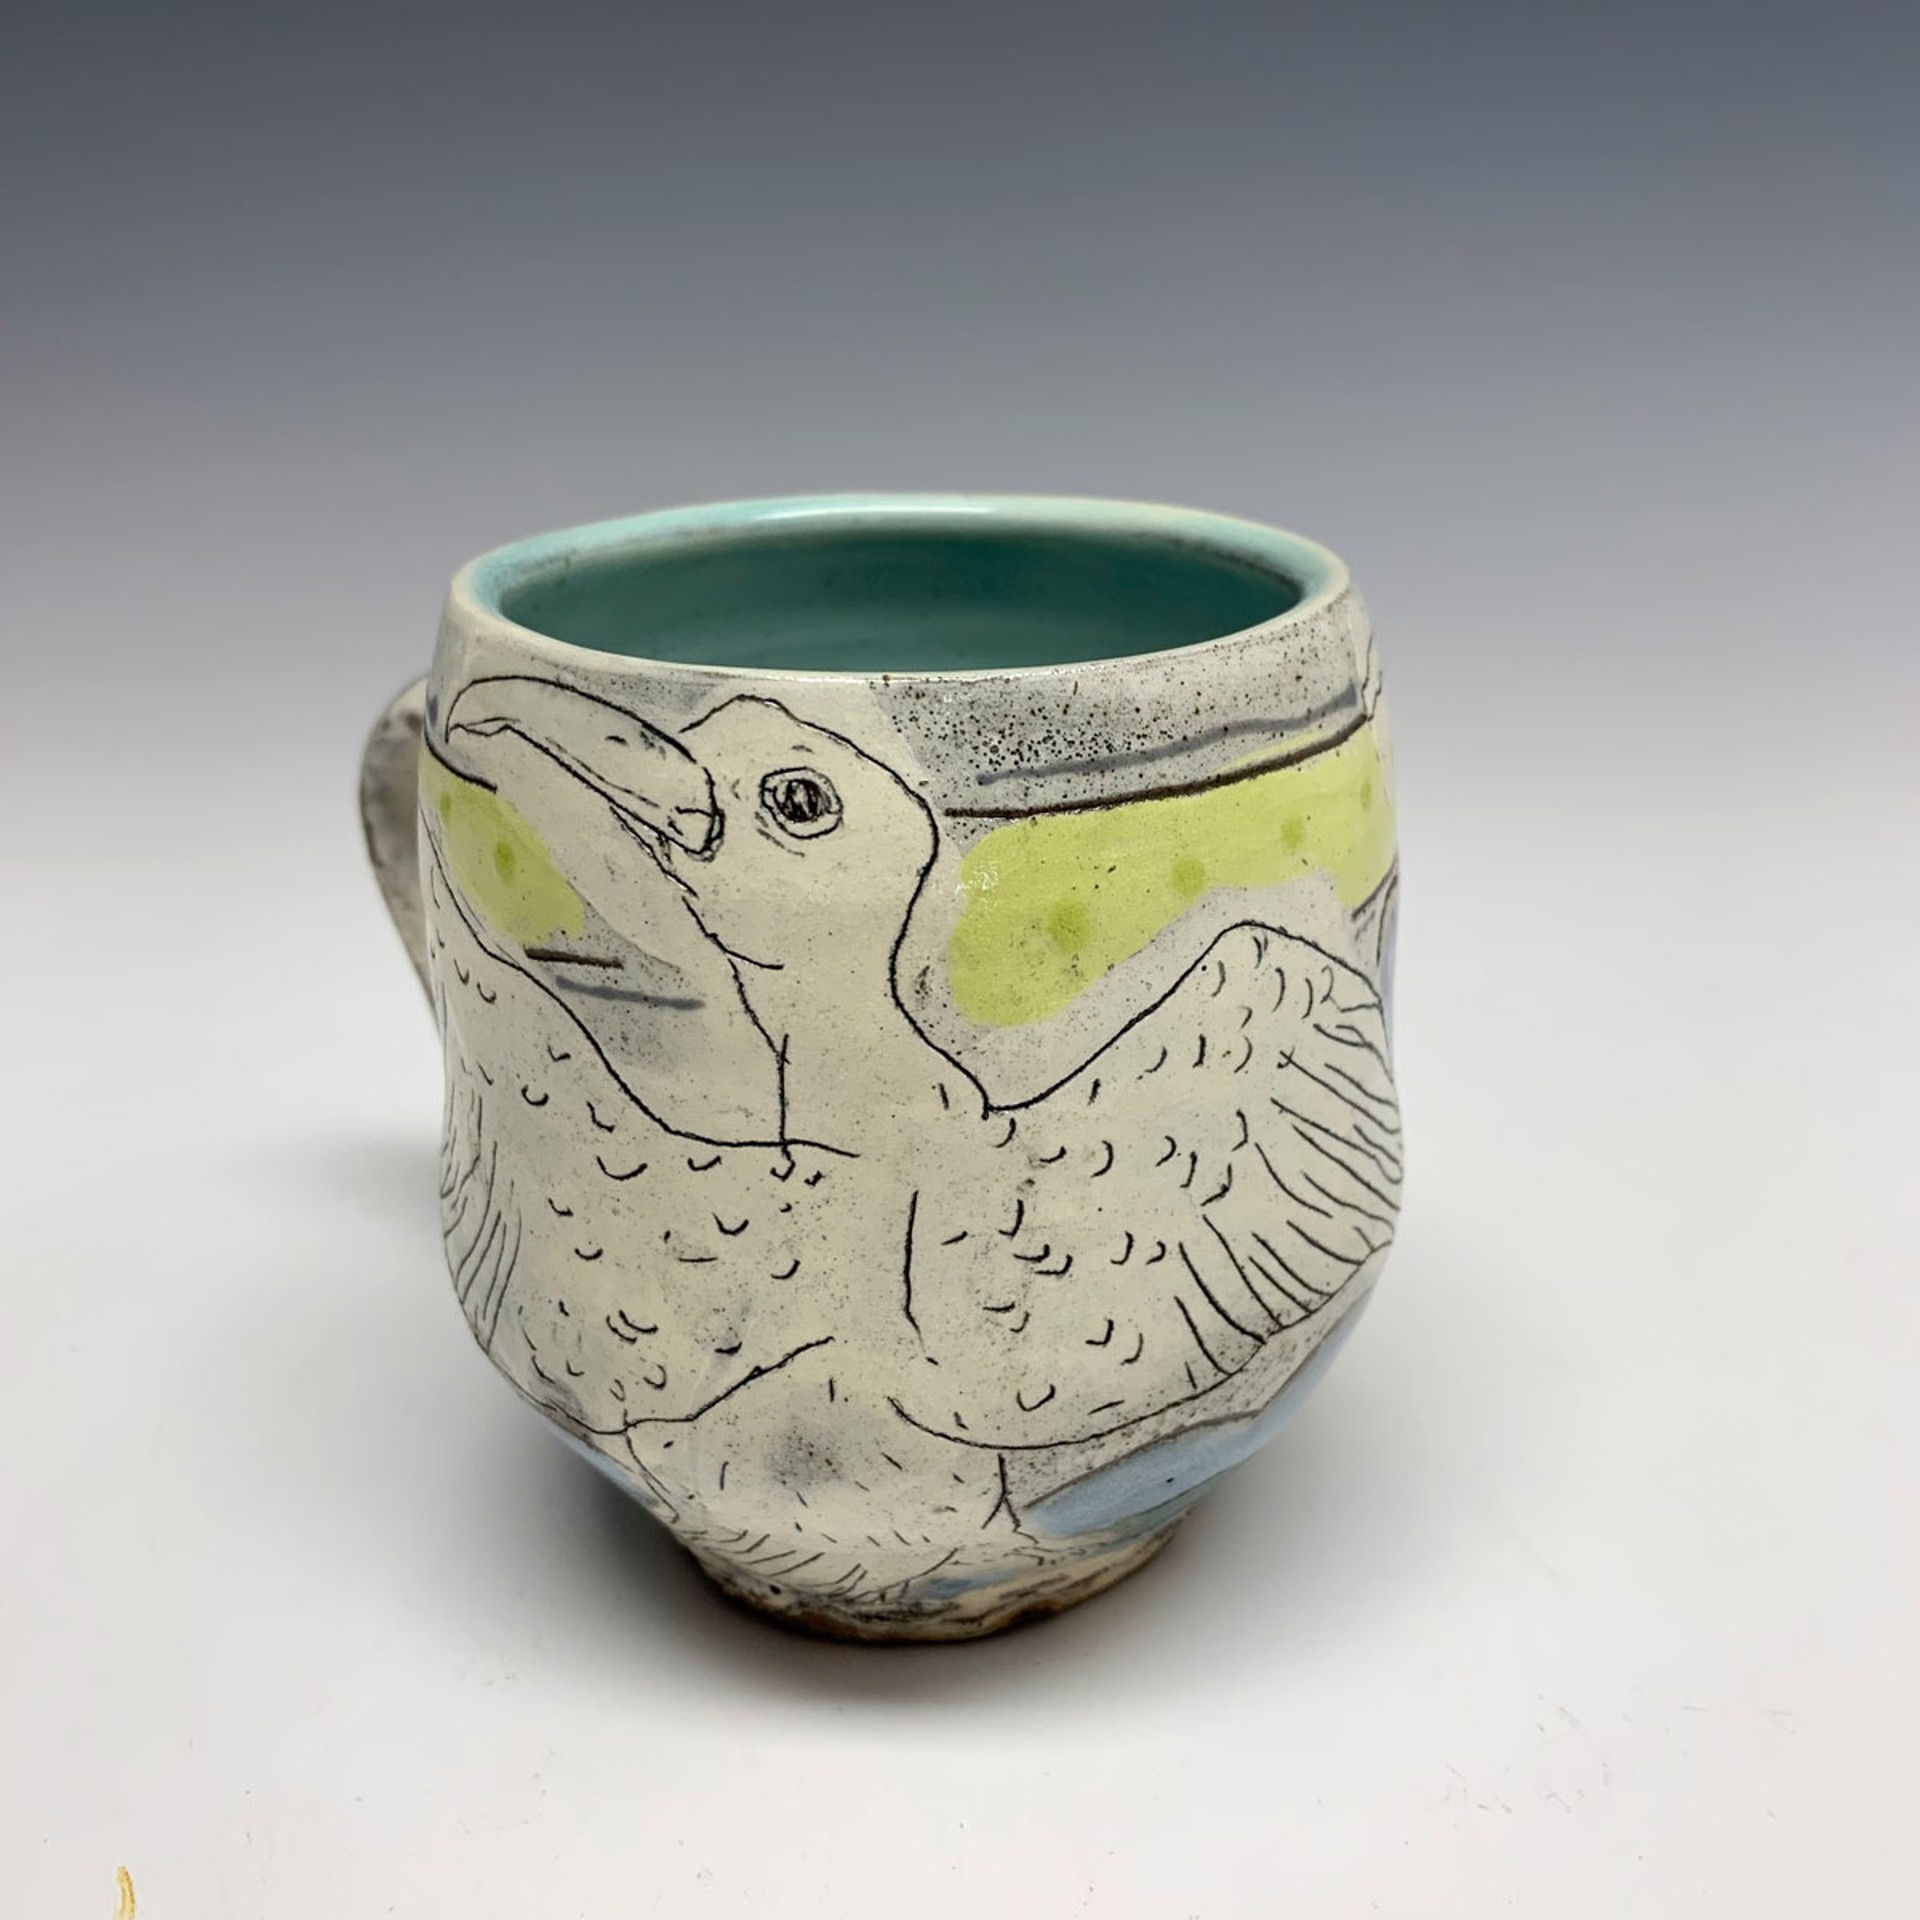 Two Birds mug by Lynne Hobaica